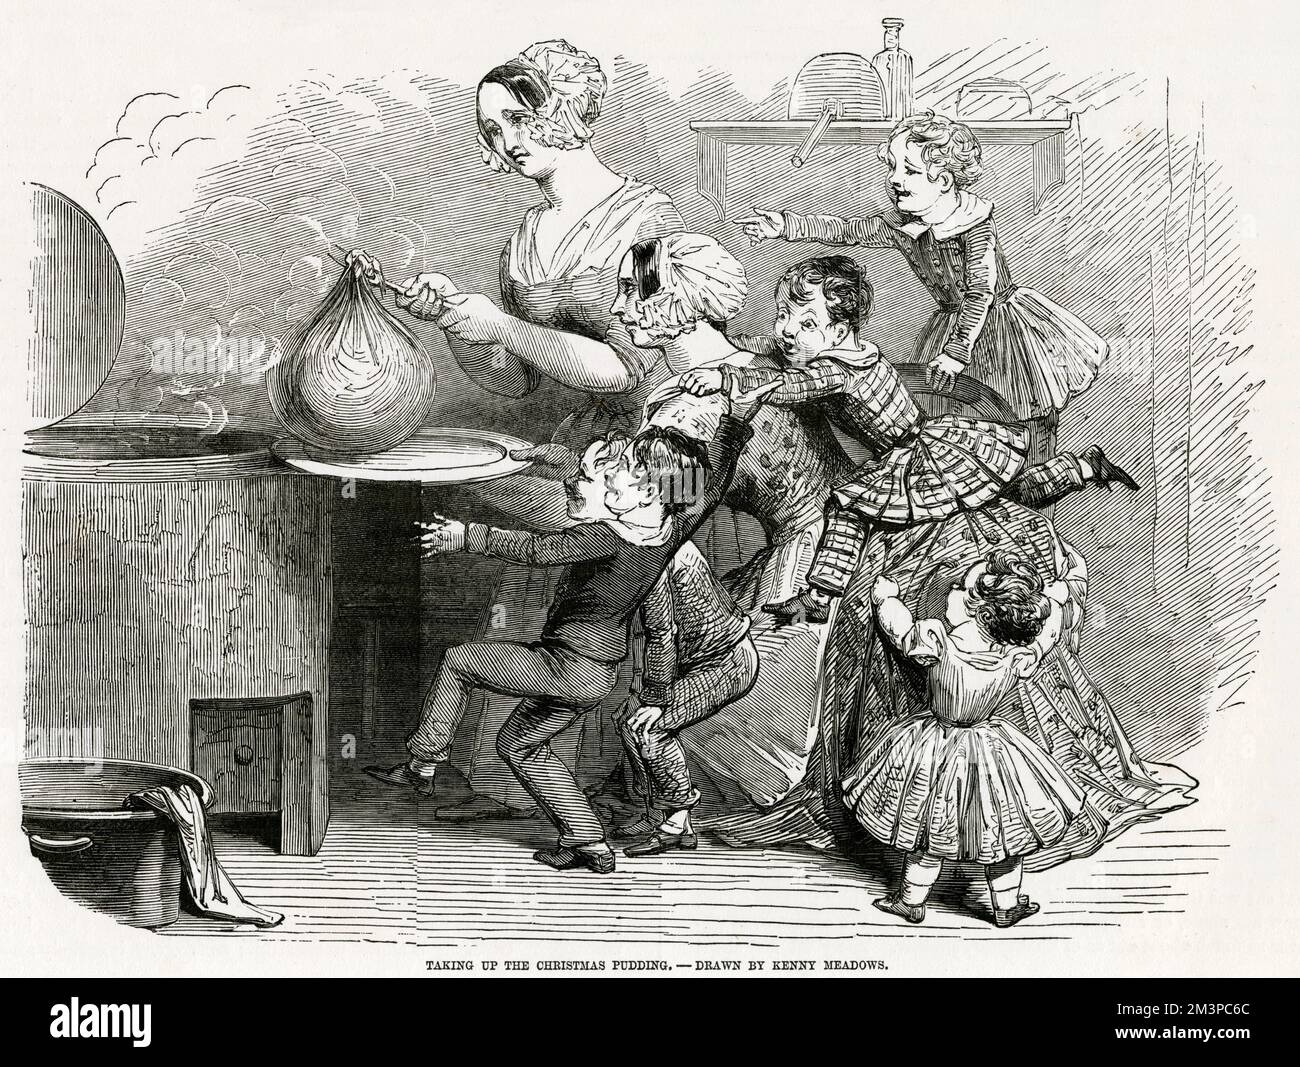 Prendre le pudding de Noël : cinq enfants exquises rejoy à la vue d'un pudding de prune enveloppé de mousseline, tenu par deux femmes victoriennes à l'aspect harcelé. 1848 Banque D'Images